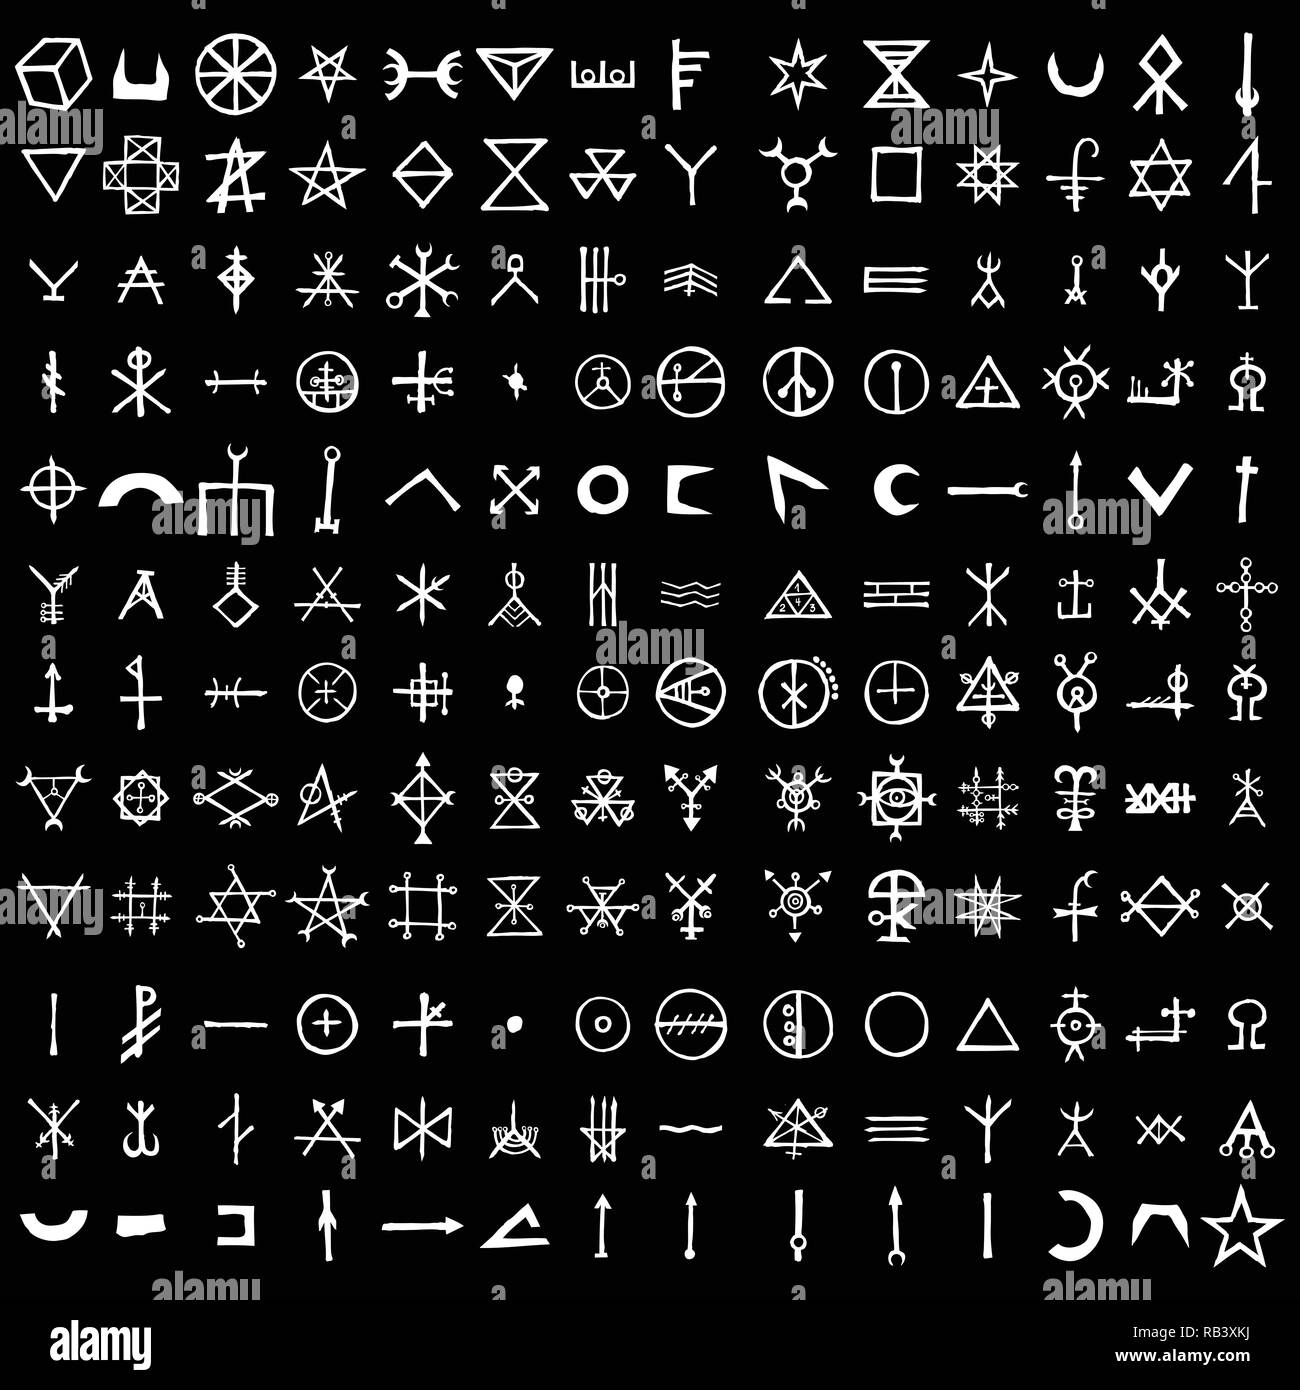 Zodiac Posters by Simboli Design, 1969 - DJ Food